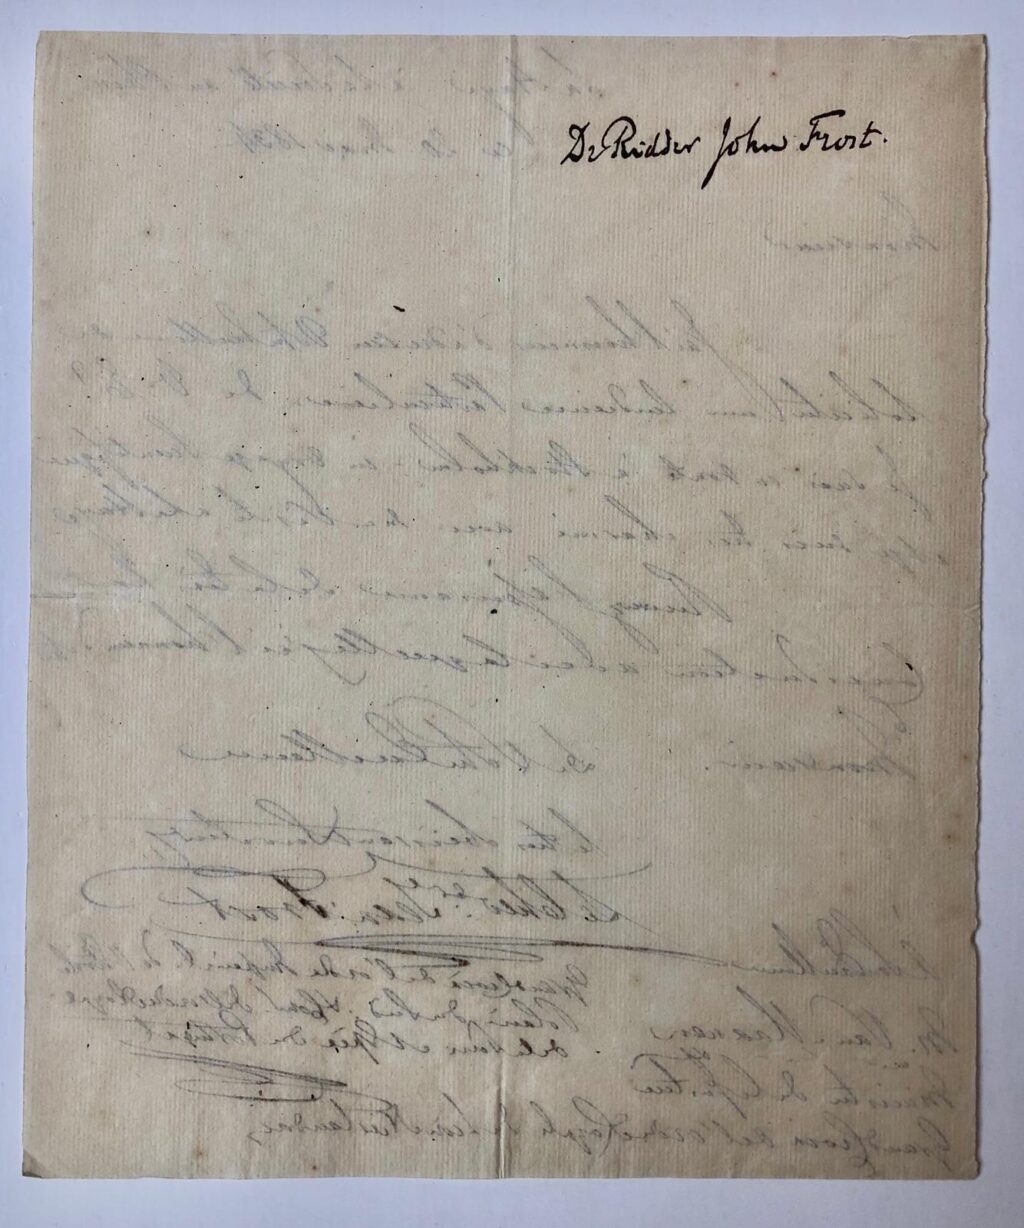 [Manuscript] FROST, VAN MAANEN Brief van Dr. Ridder John Frost, d.d. `La Haye à Societé au Plein', 20 mei 1834, aan de minister van Justitie Van Maanen, 1 p.